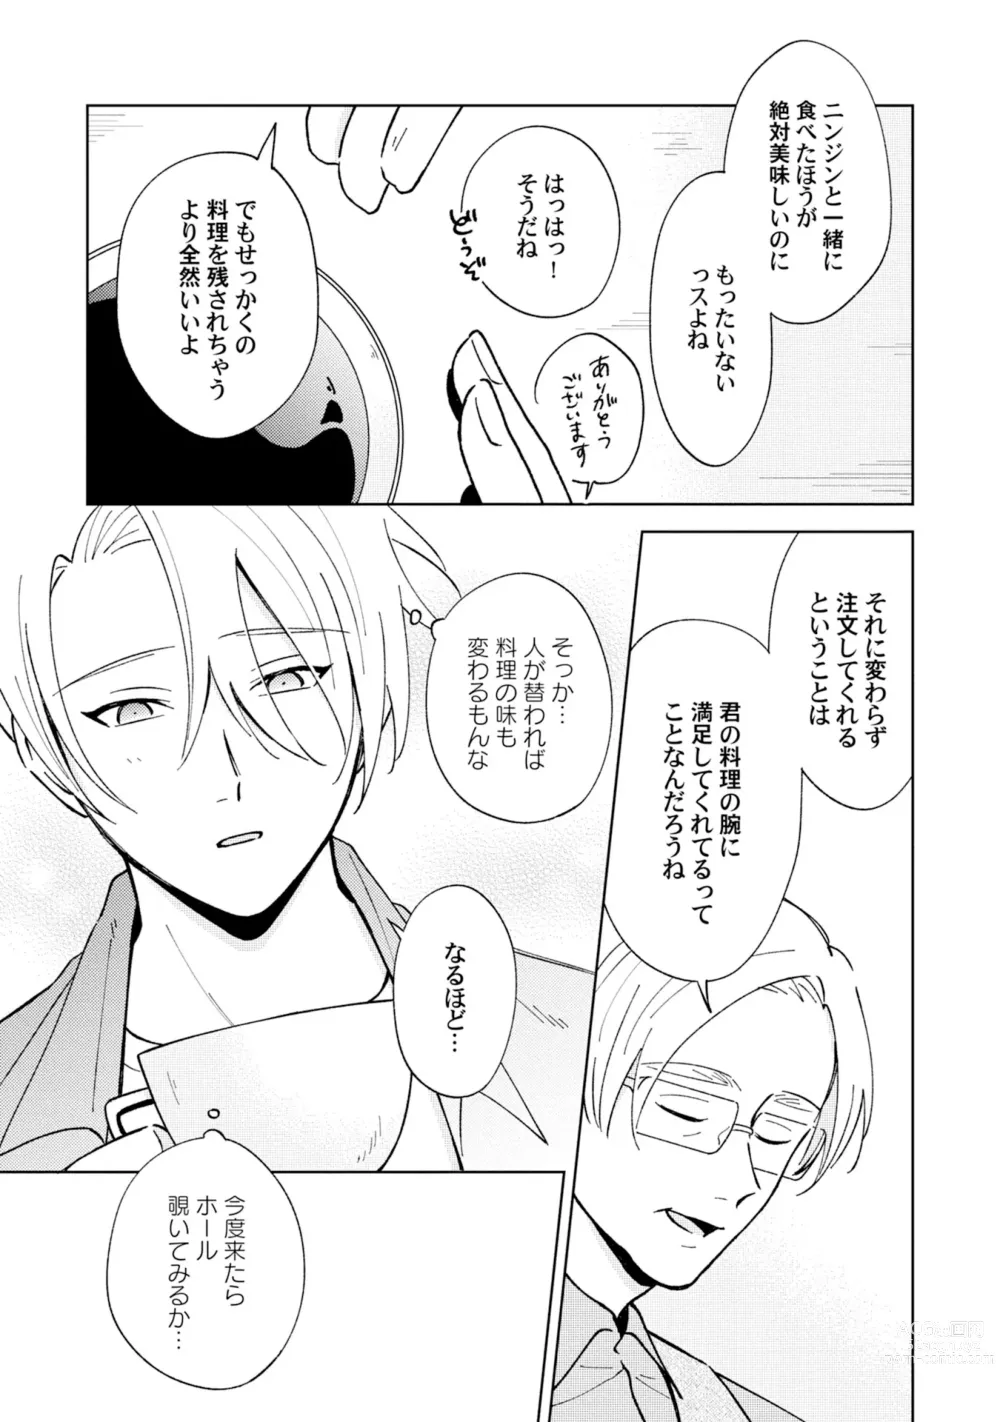 Page 11 of manga Toho 3-byou no Trouble Love Room 2